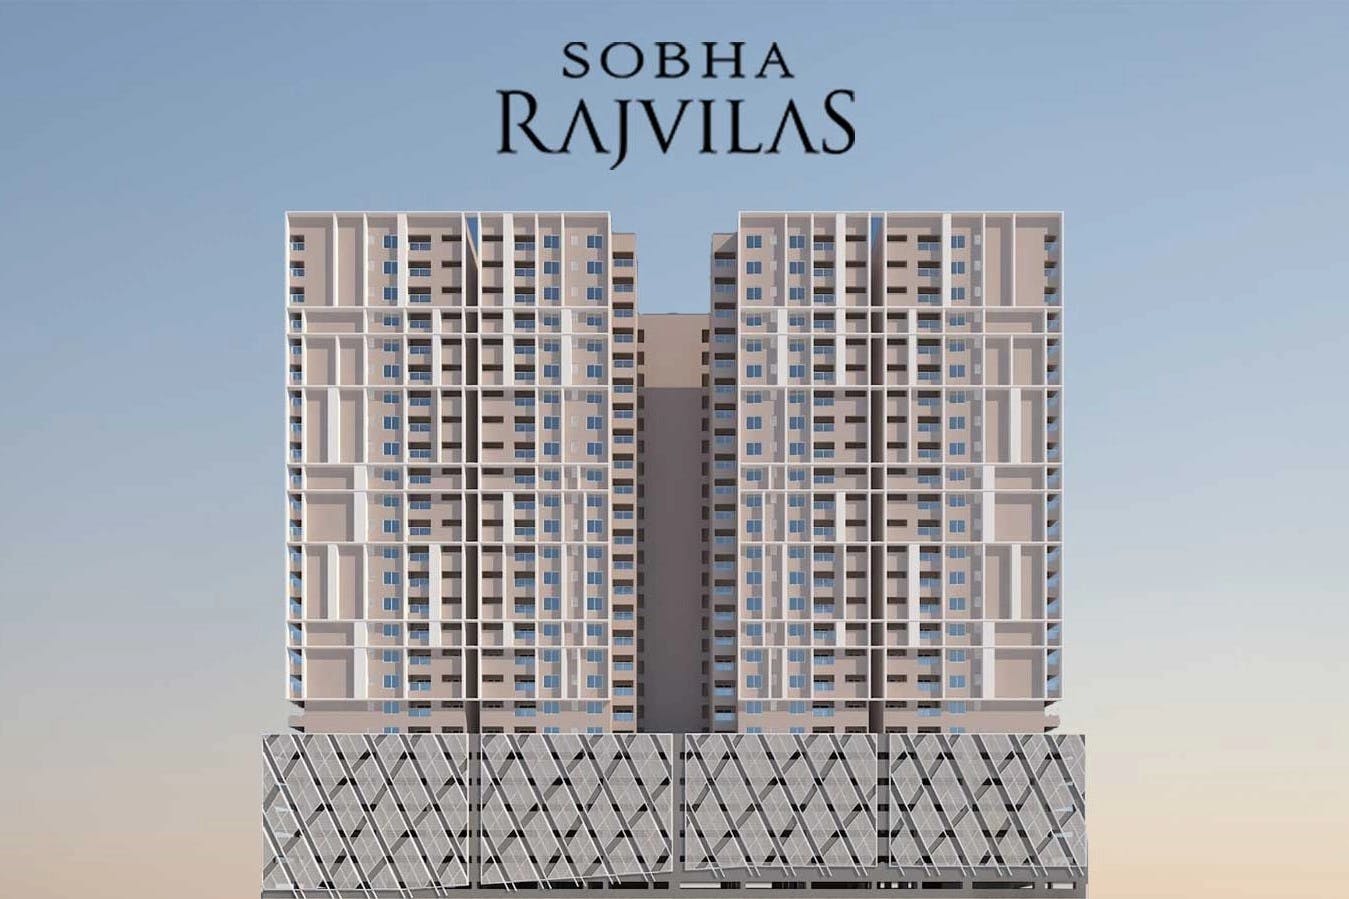 Floor plan for Sobha Rajvilas